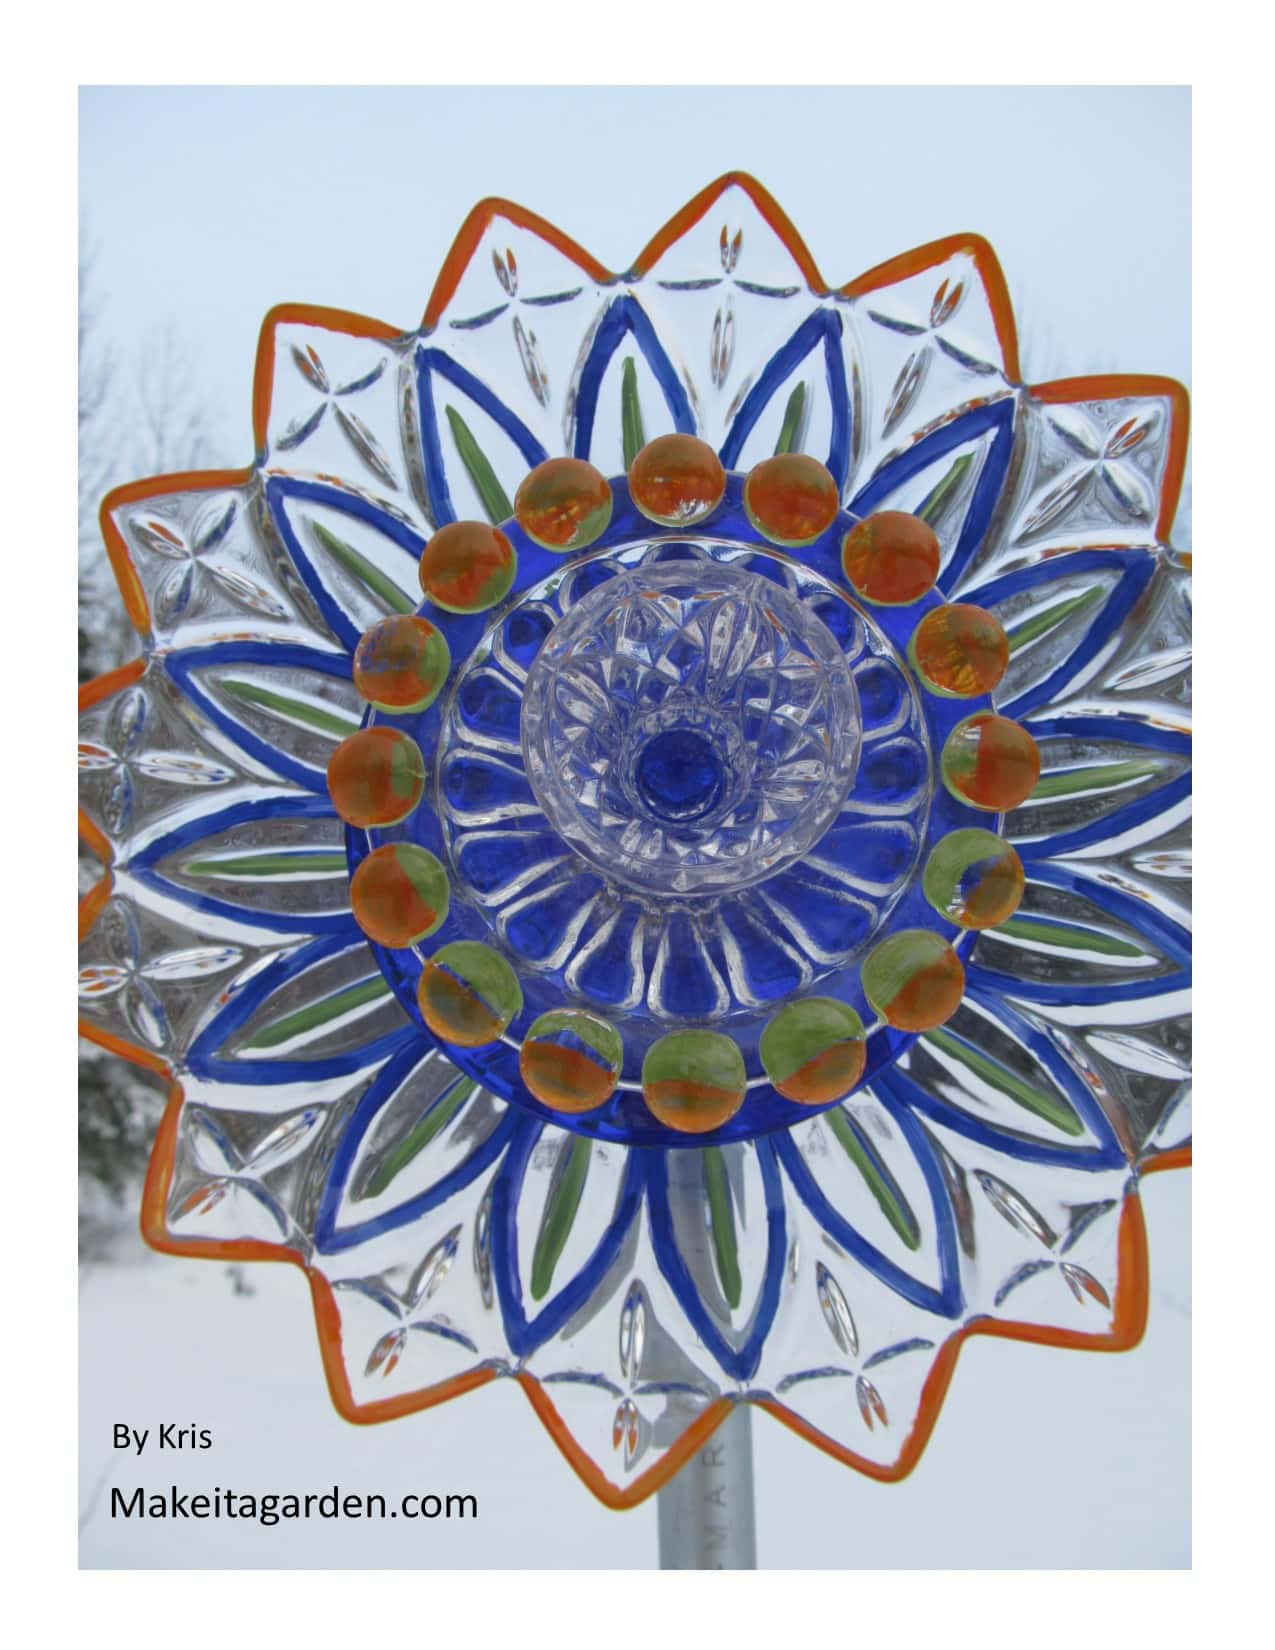  Artist's dish Blume. Eine hübsche, Blumenform Glasschale verwendet, um auf Glasplatten zu malen